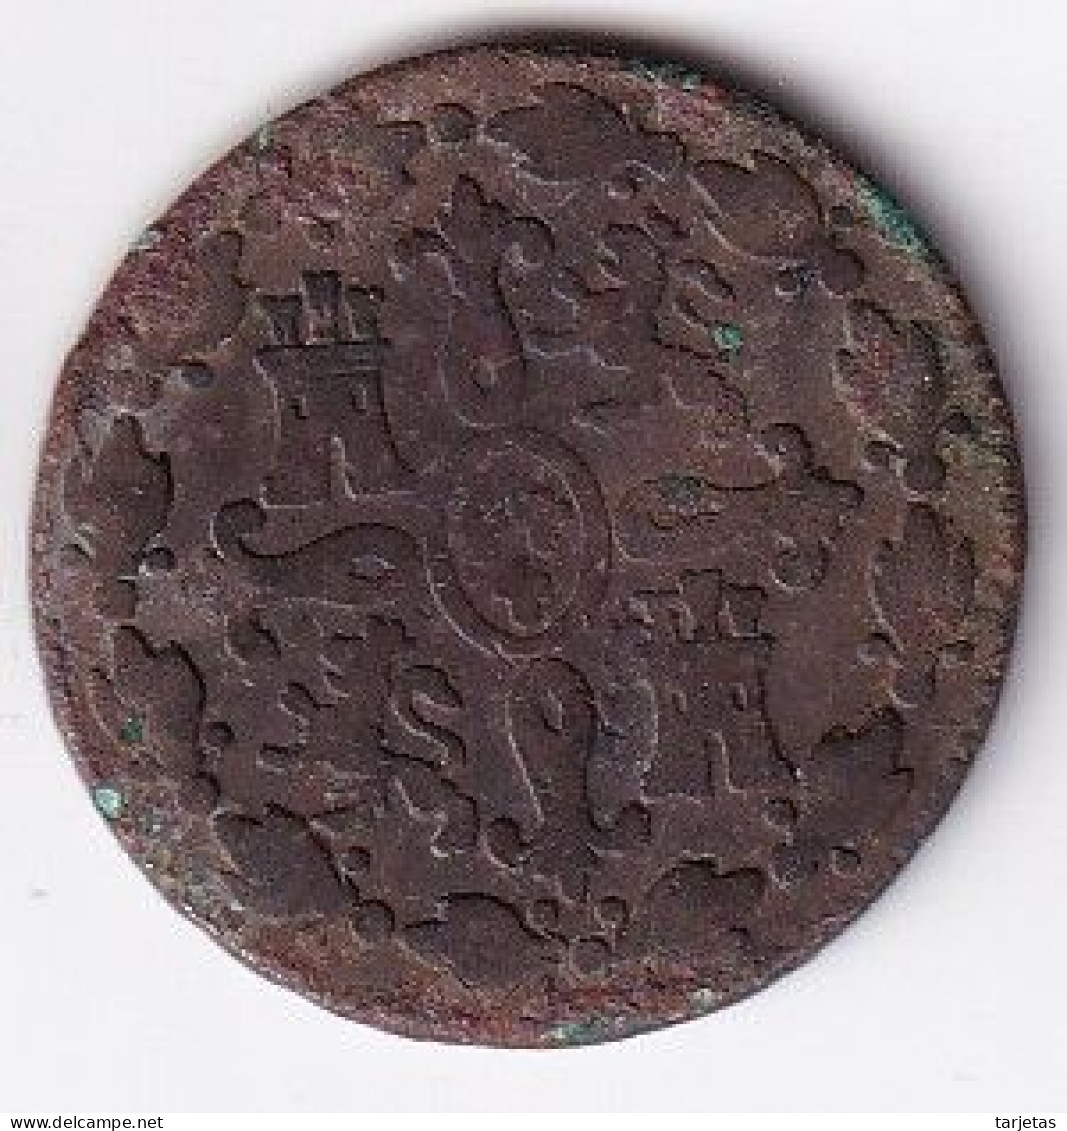 MONEDA DE ESPAÑA DE 4 MARAVEDIS DE FERNANDO VII DEL AÑO 1833 (COIN) - Münzen Der Provinzen